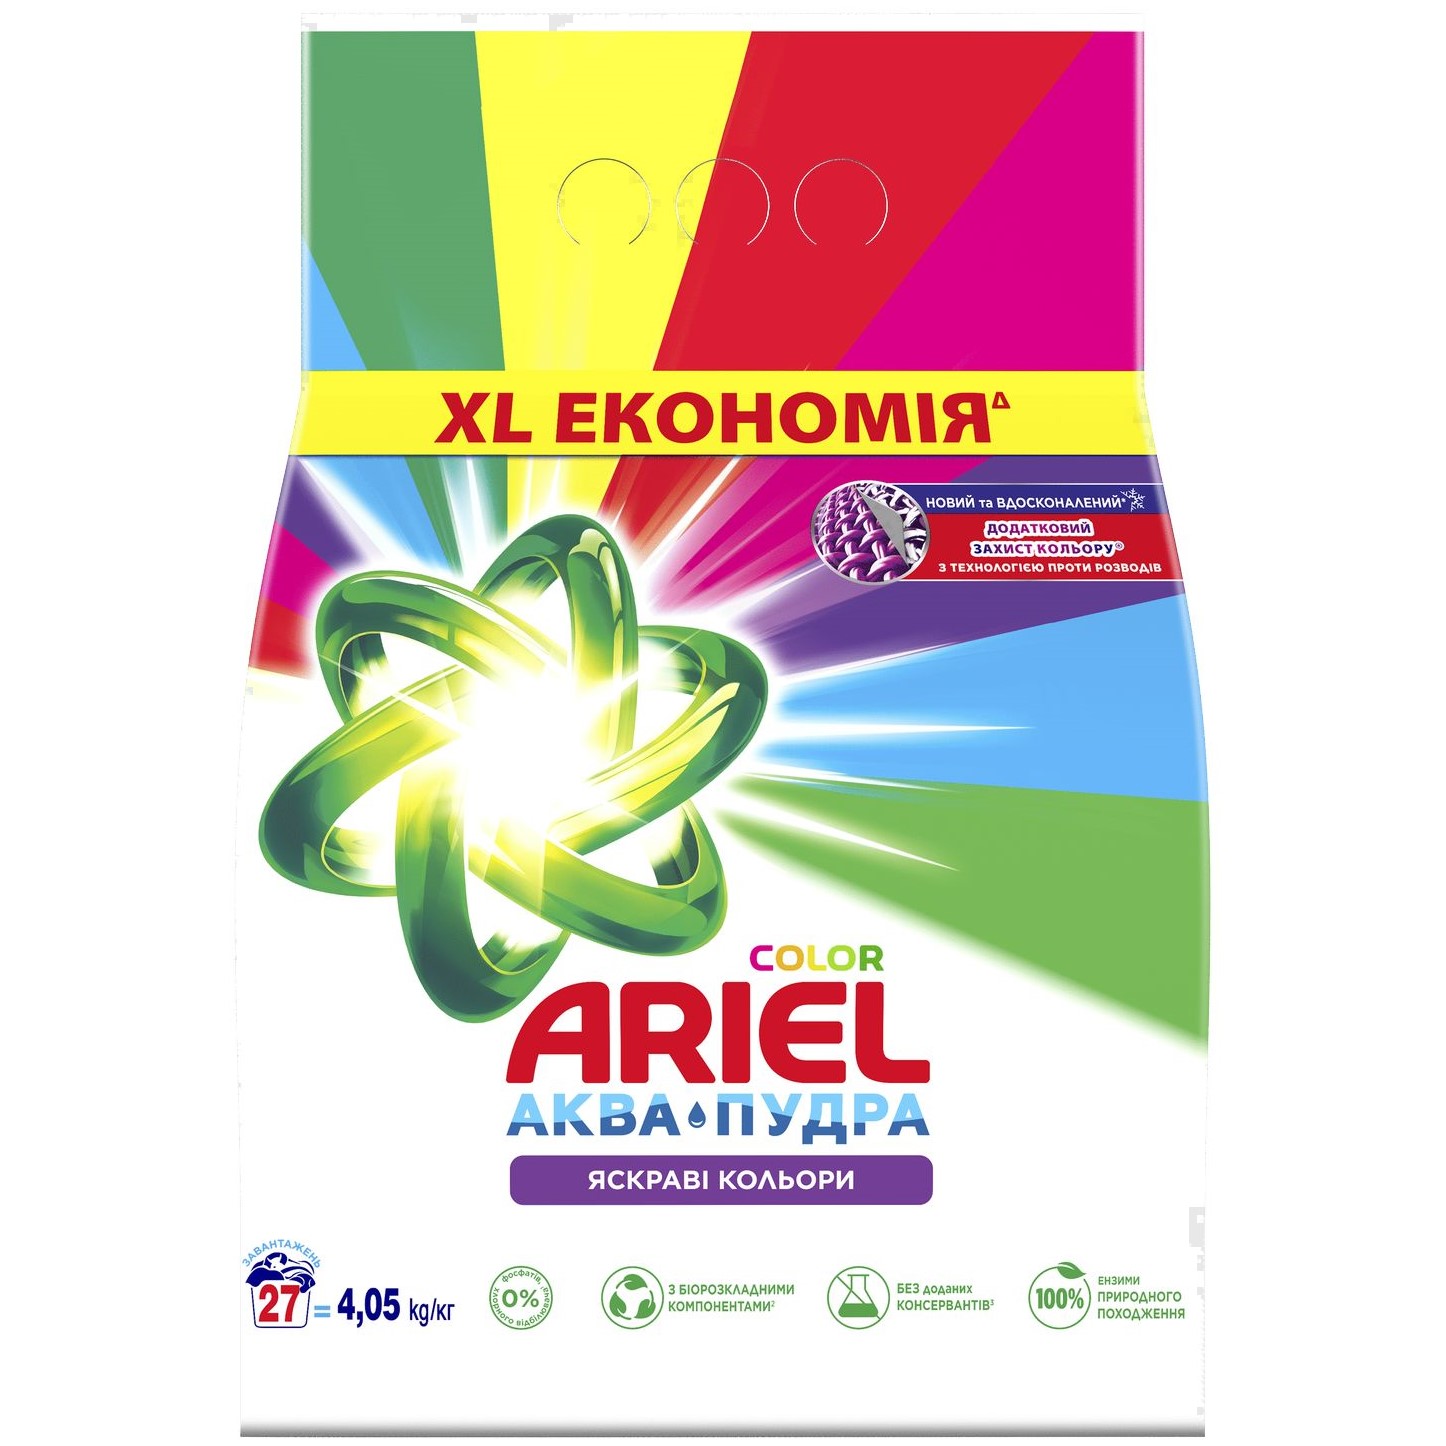 Пральний порошок Ariel Аква-Пудра Color Яскраві кольори 4.05 кг - фото 1